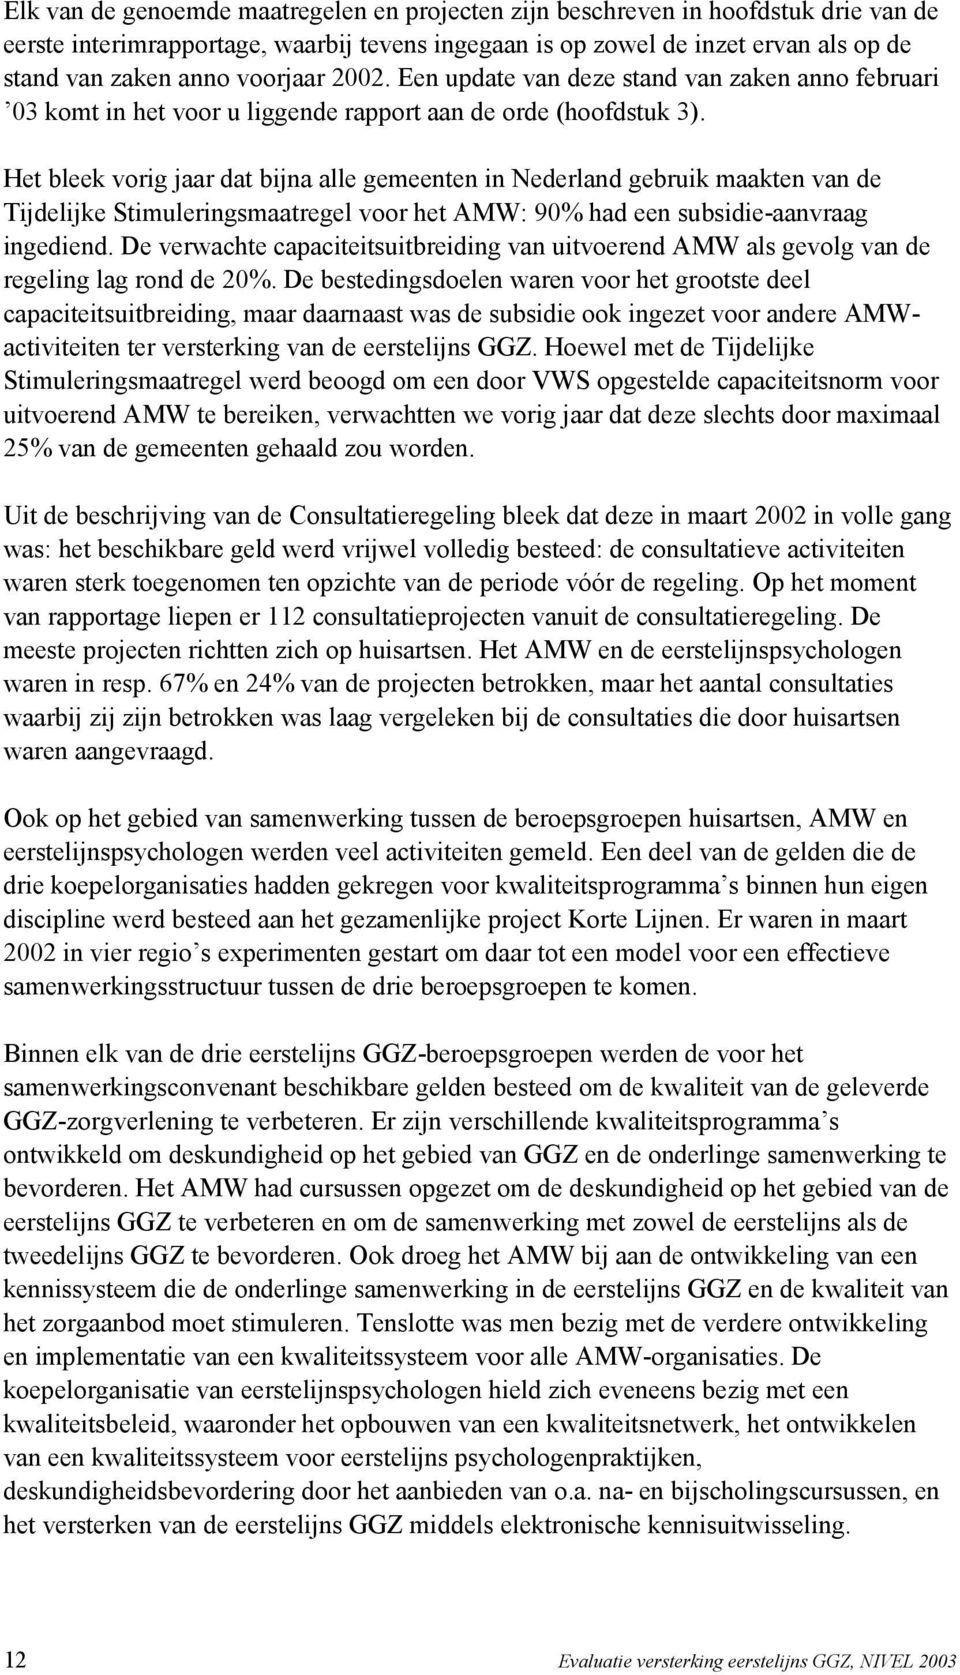 Het bleek vorig jaar dat bijna alle gemeenten in Nederland gebruik maakten van de Tijdelijke Stimuleringsmaatregel voor het AMW: 90% had een subsidie-aanvraag ingediend.